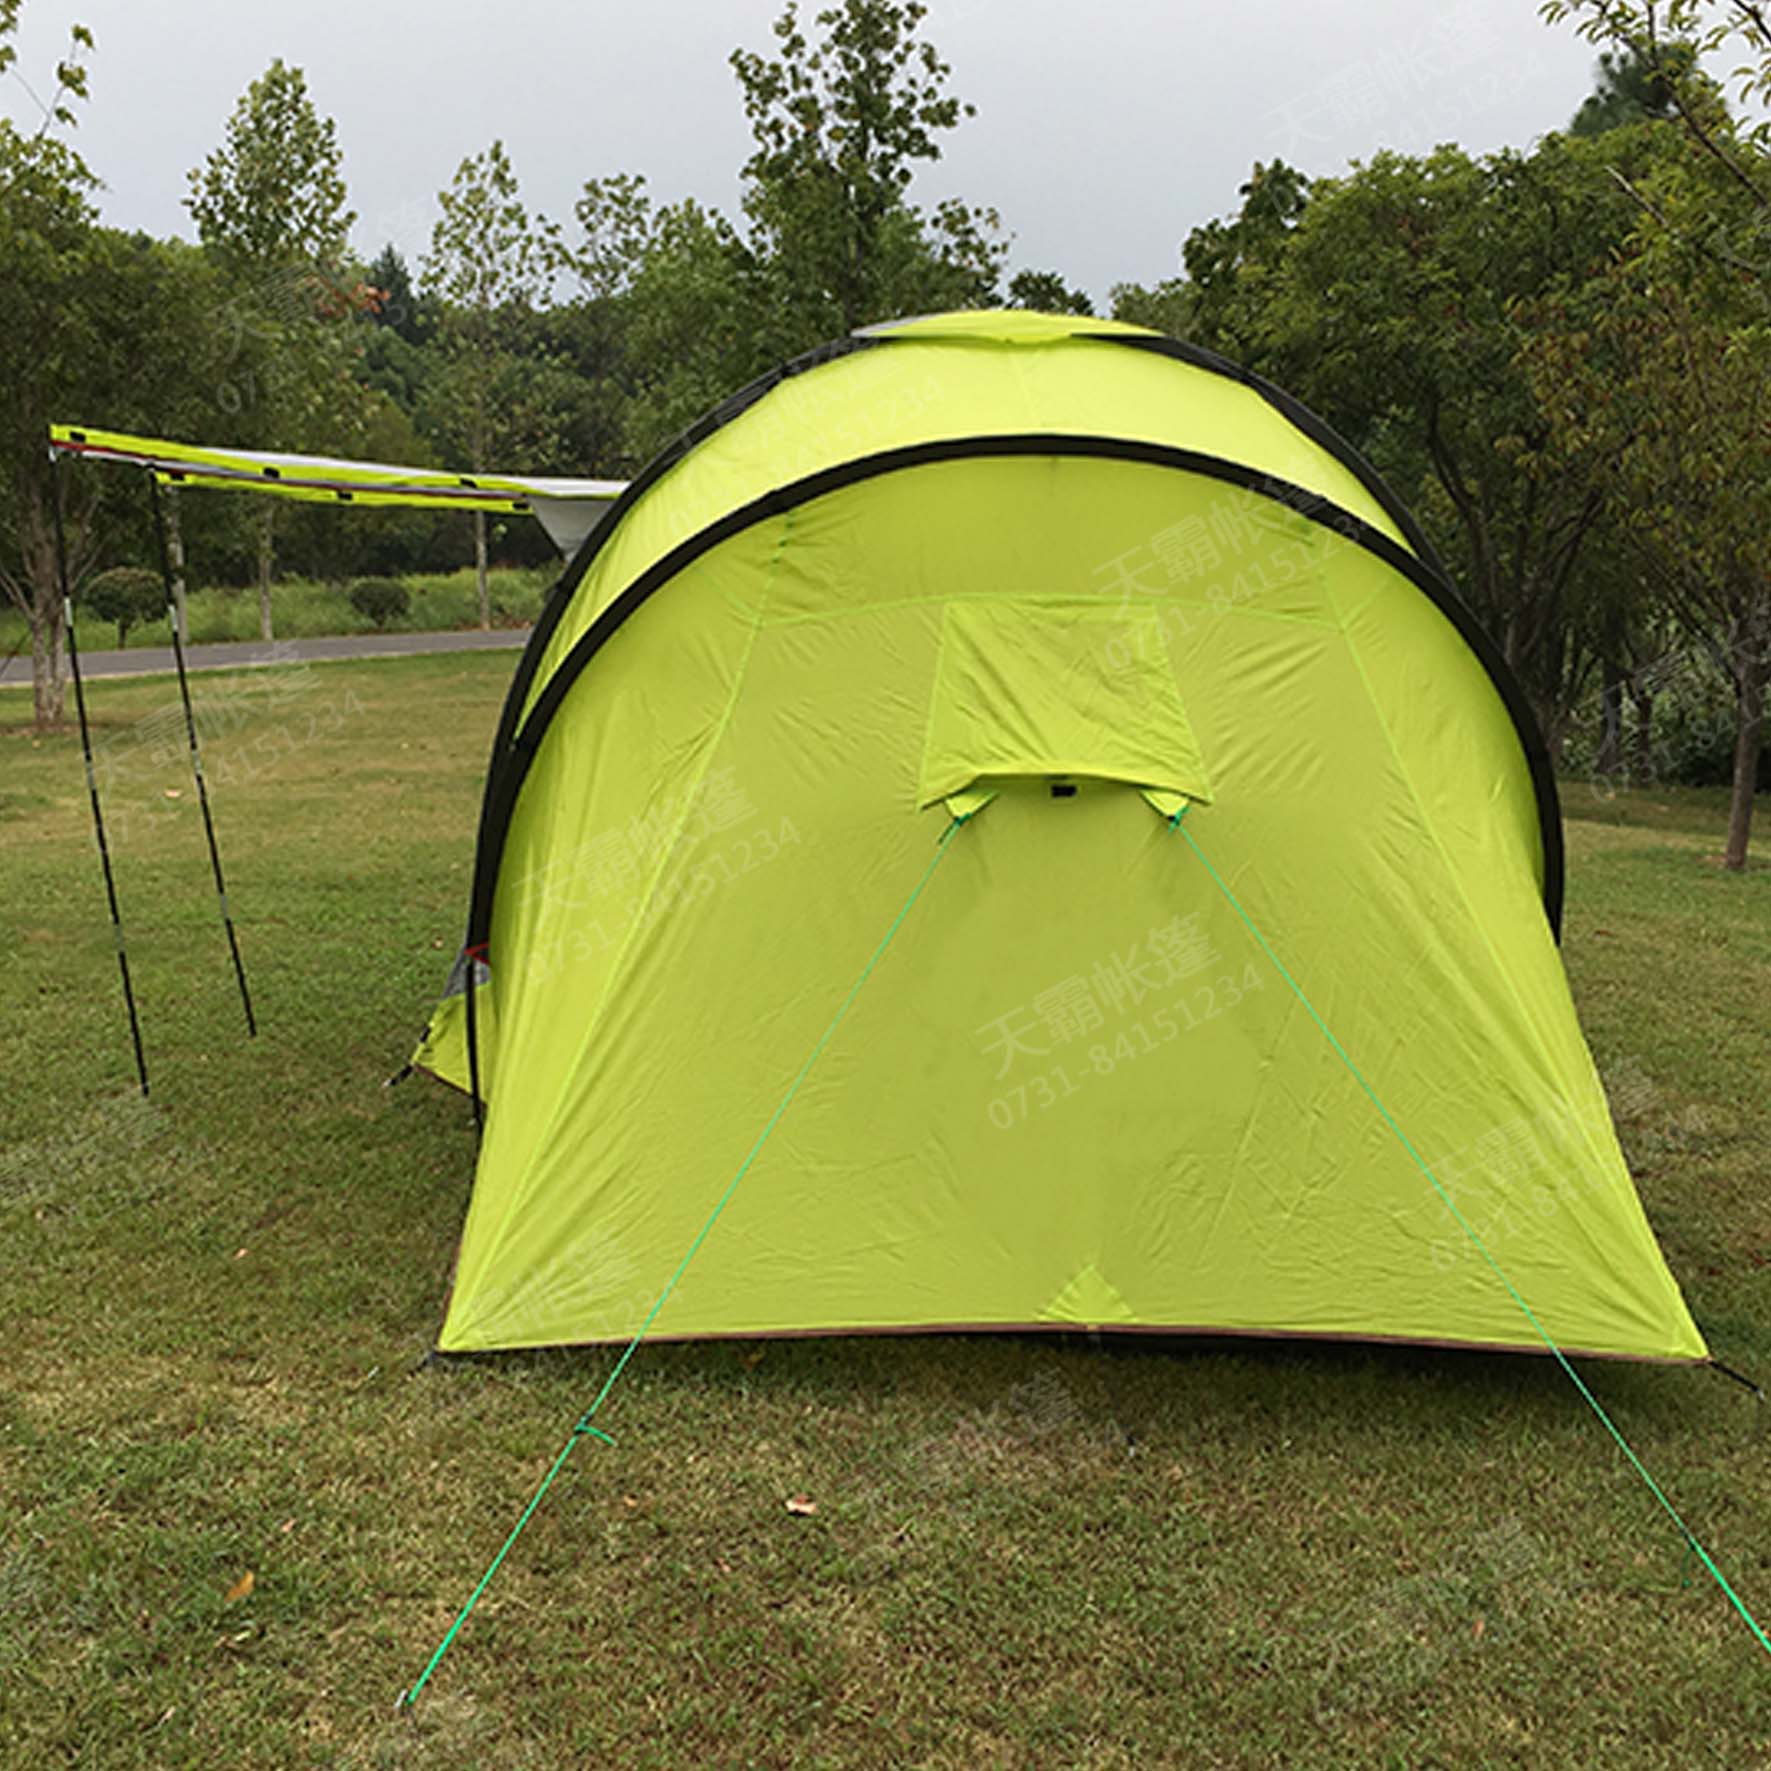 厂家直销 户外双层野营帐篷 防风防雨旅游露营双人帐篷-阿里巴巴